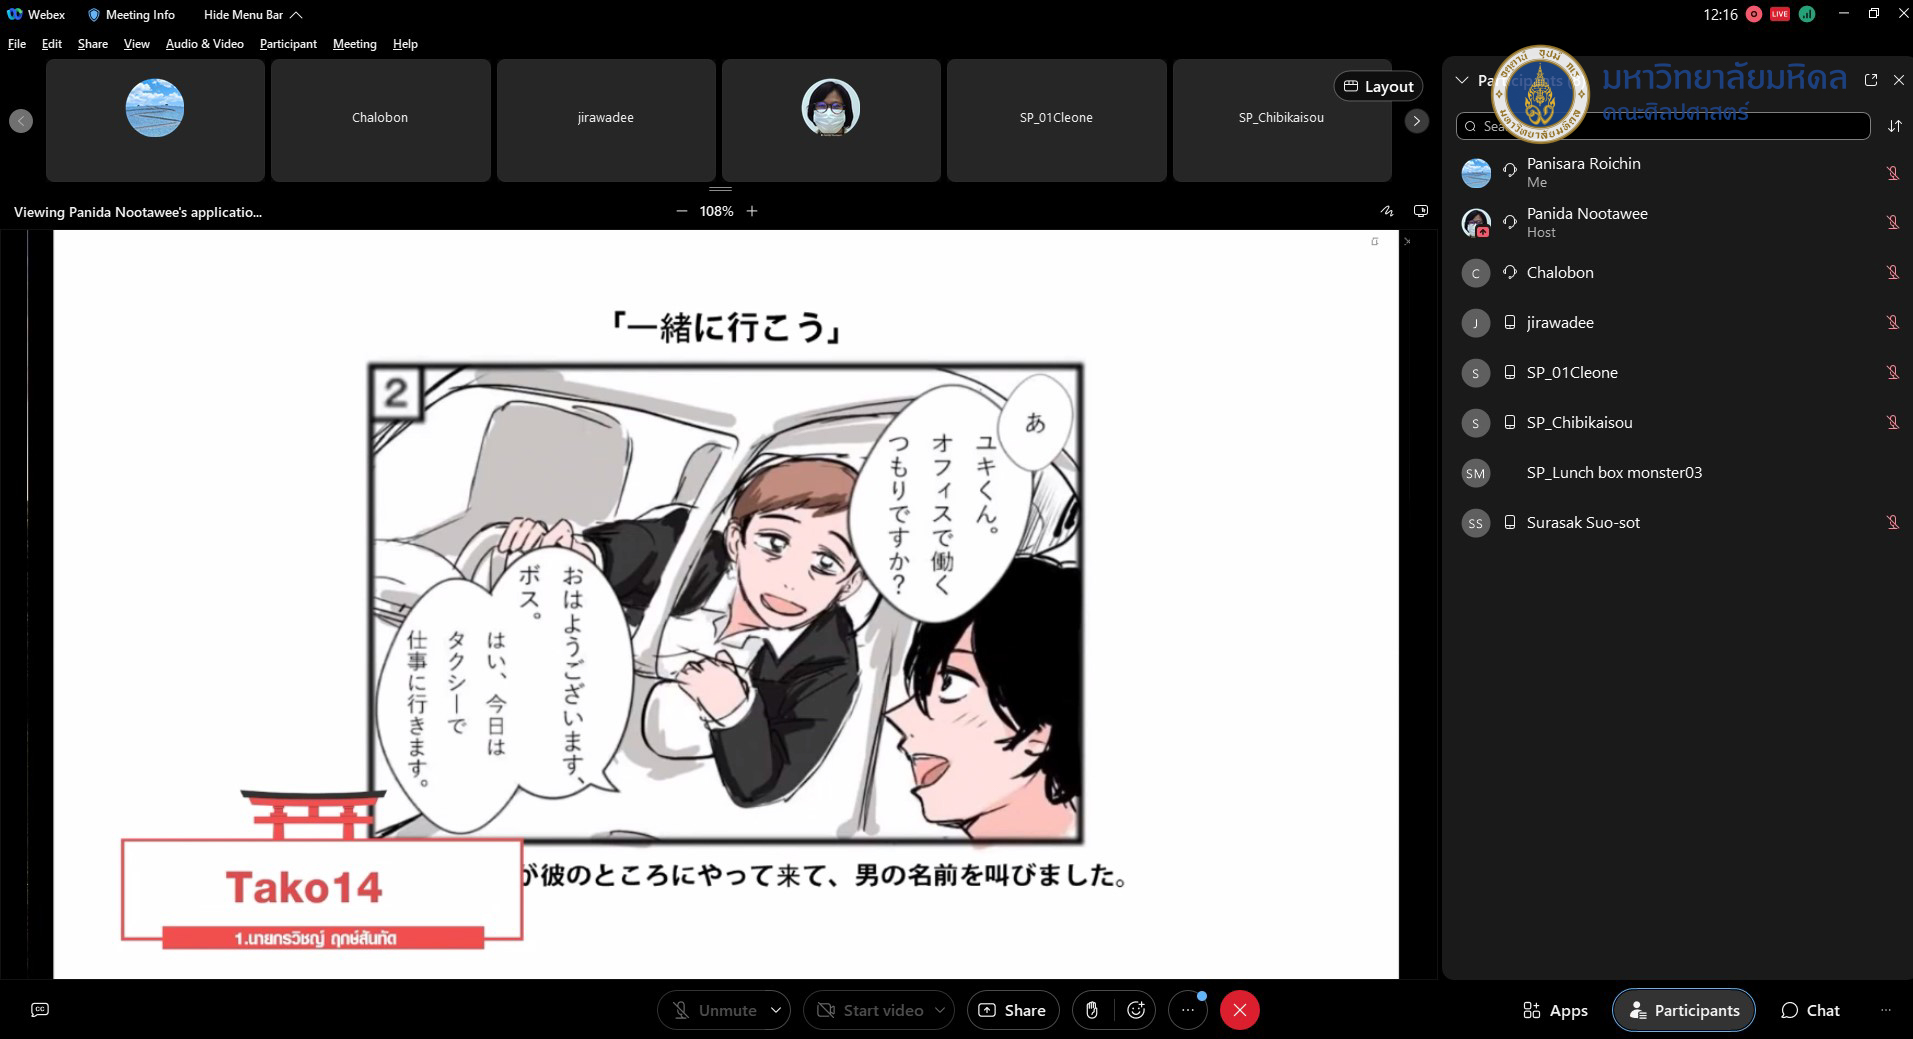 กิจกรรมส่งเสริมการเรียนรู้ภาษาและวัฒนธรรมญี่ปุ่น หัวข้อ การ เขียนและเล่าเรื่องการ์ตูนญี่ปุ่นสี่ช่อง (Ki-Shou-Ten-Ketsu) ครั้งที่ 2 –  คณะศิลปศาสตร์ มหาวิทยาลัยมหิดล